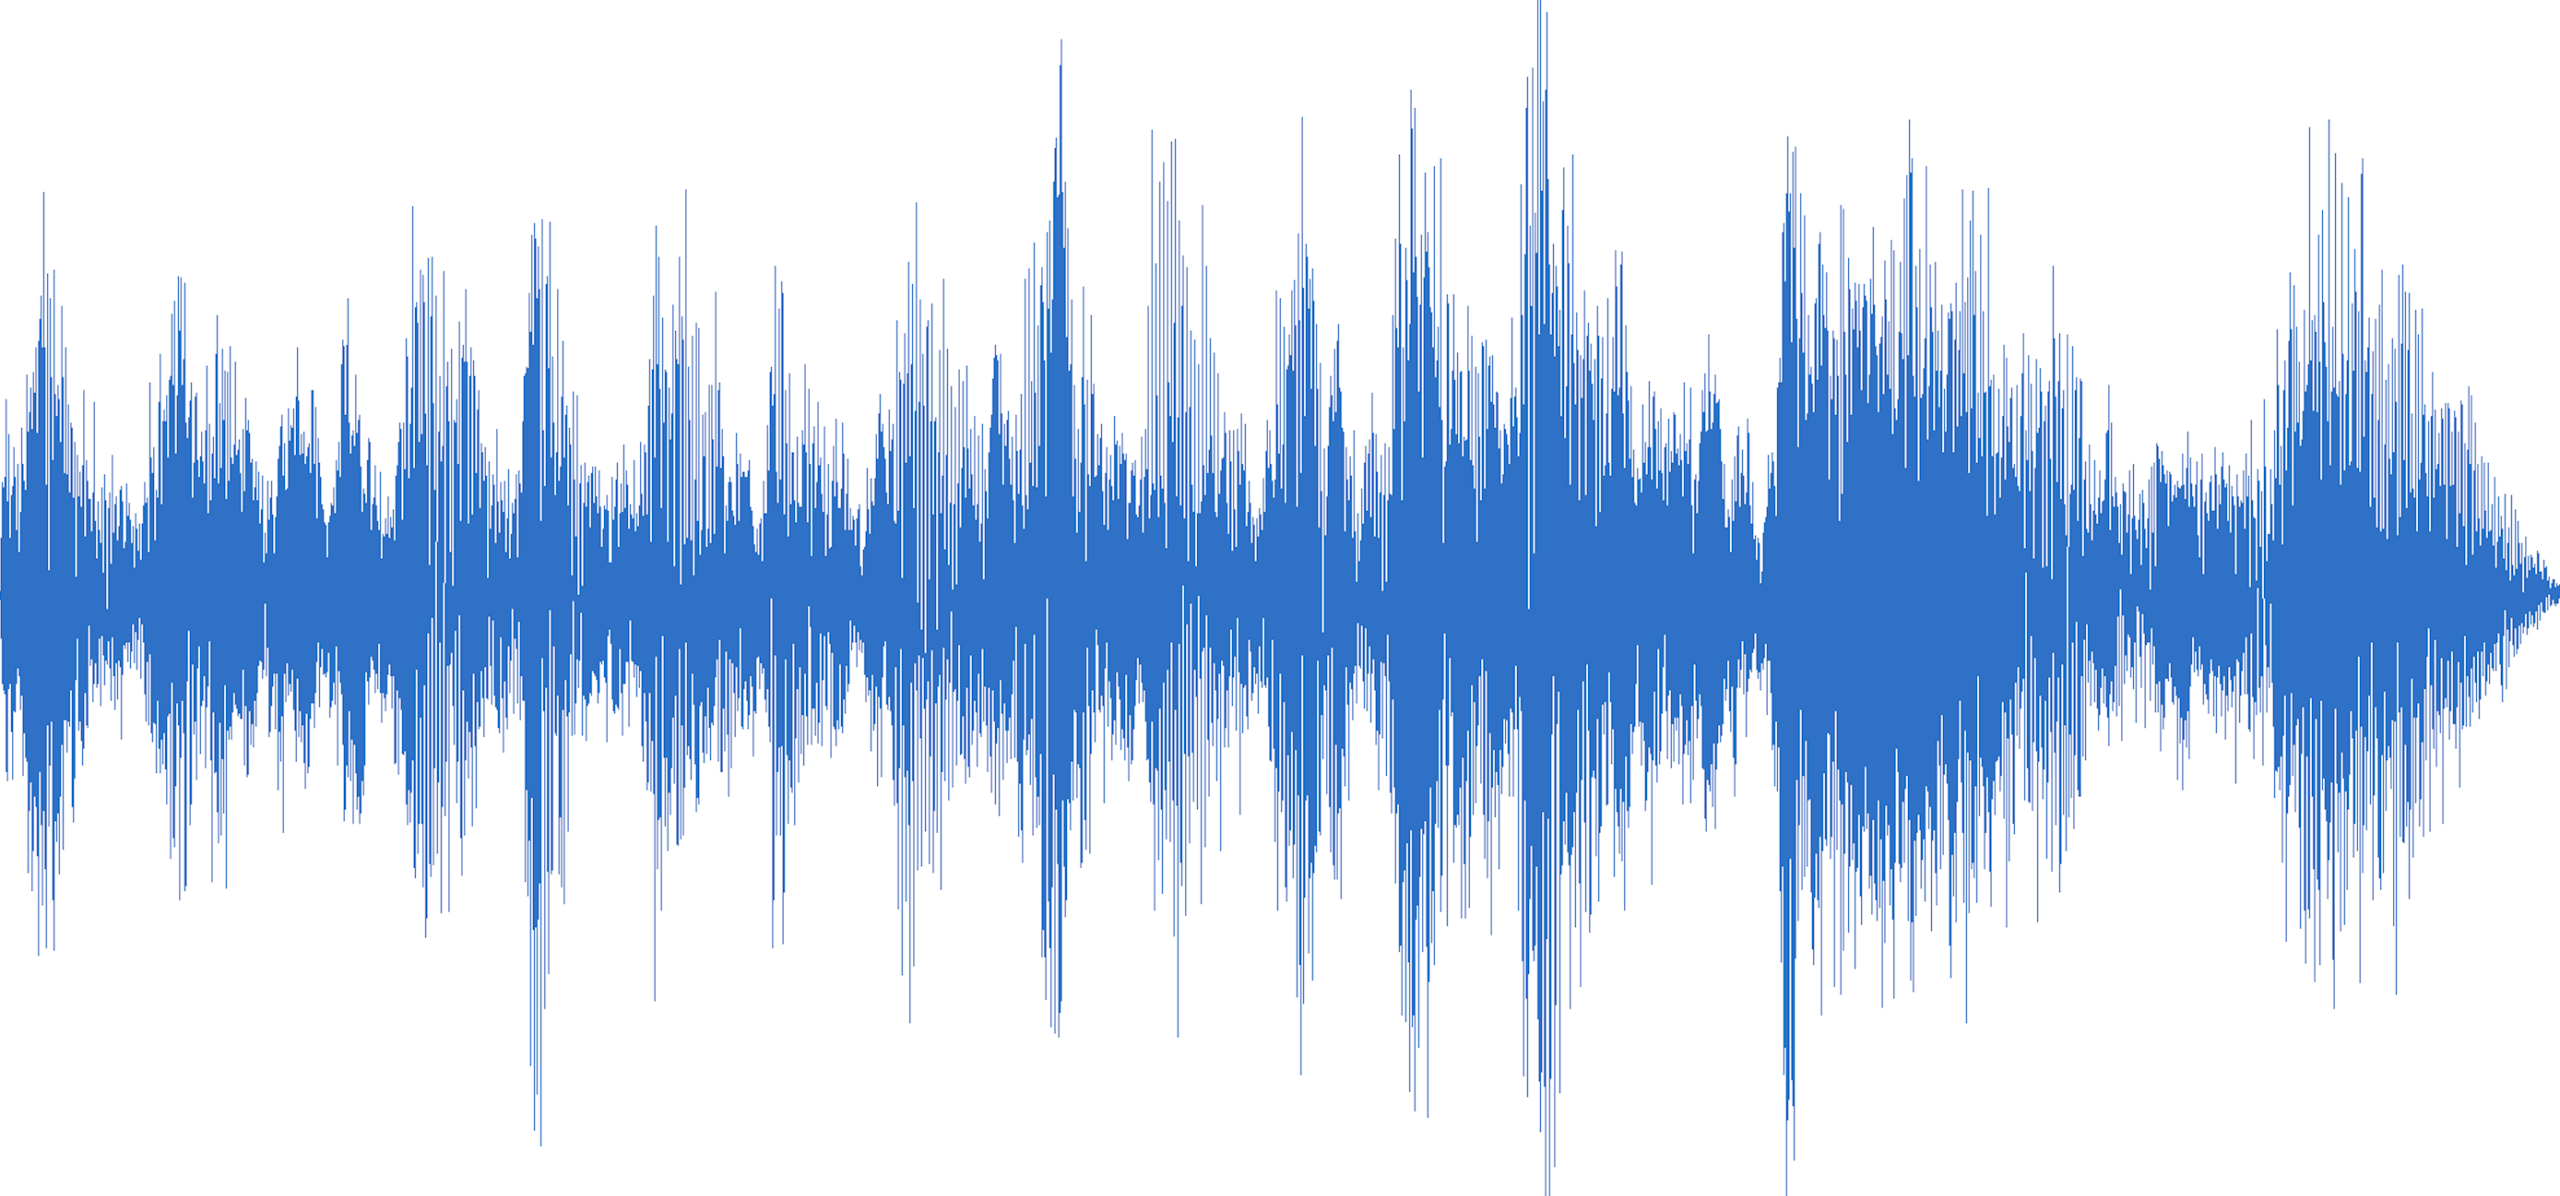 Вокальные эффекты. Звуковая волна. Звуковая дорожка. Звуковая волна на белом фоне. Изображение звука.